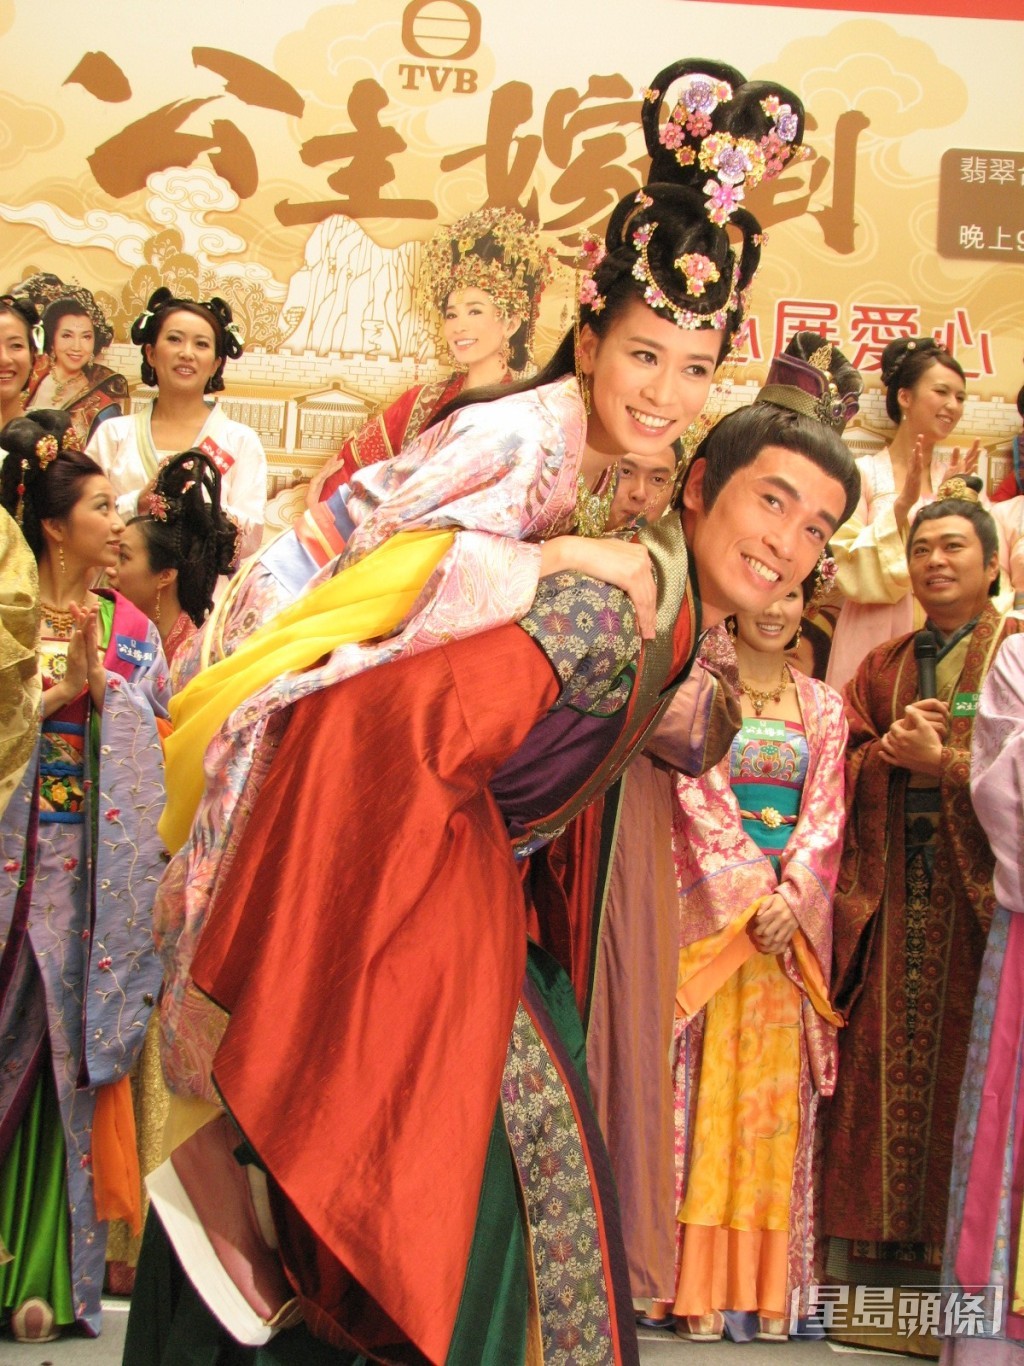 TVB趁陳豪與佘詩曼熱度未減，安排深夜重播陳豪與佘詩曼主演、2010年播出的劇集《公主嫁到》。